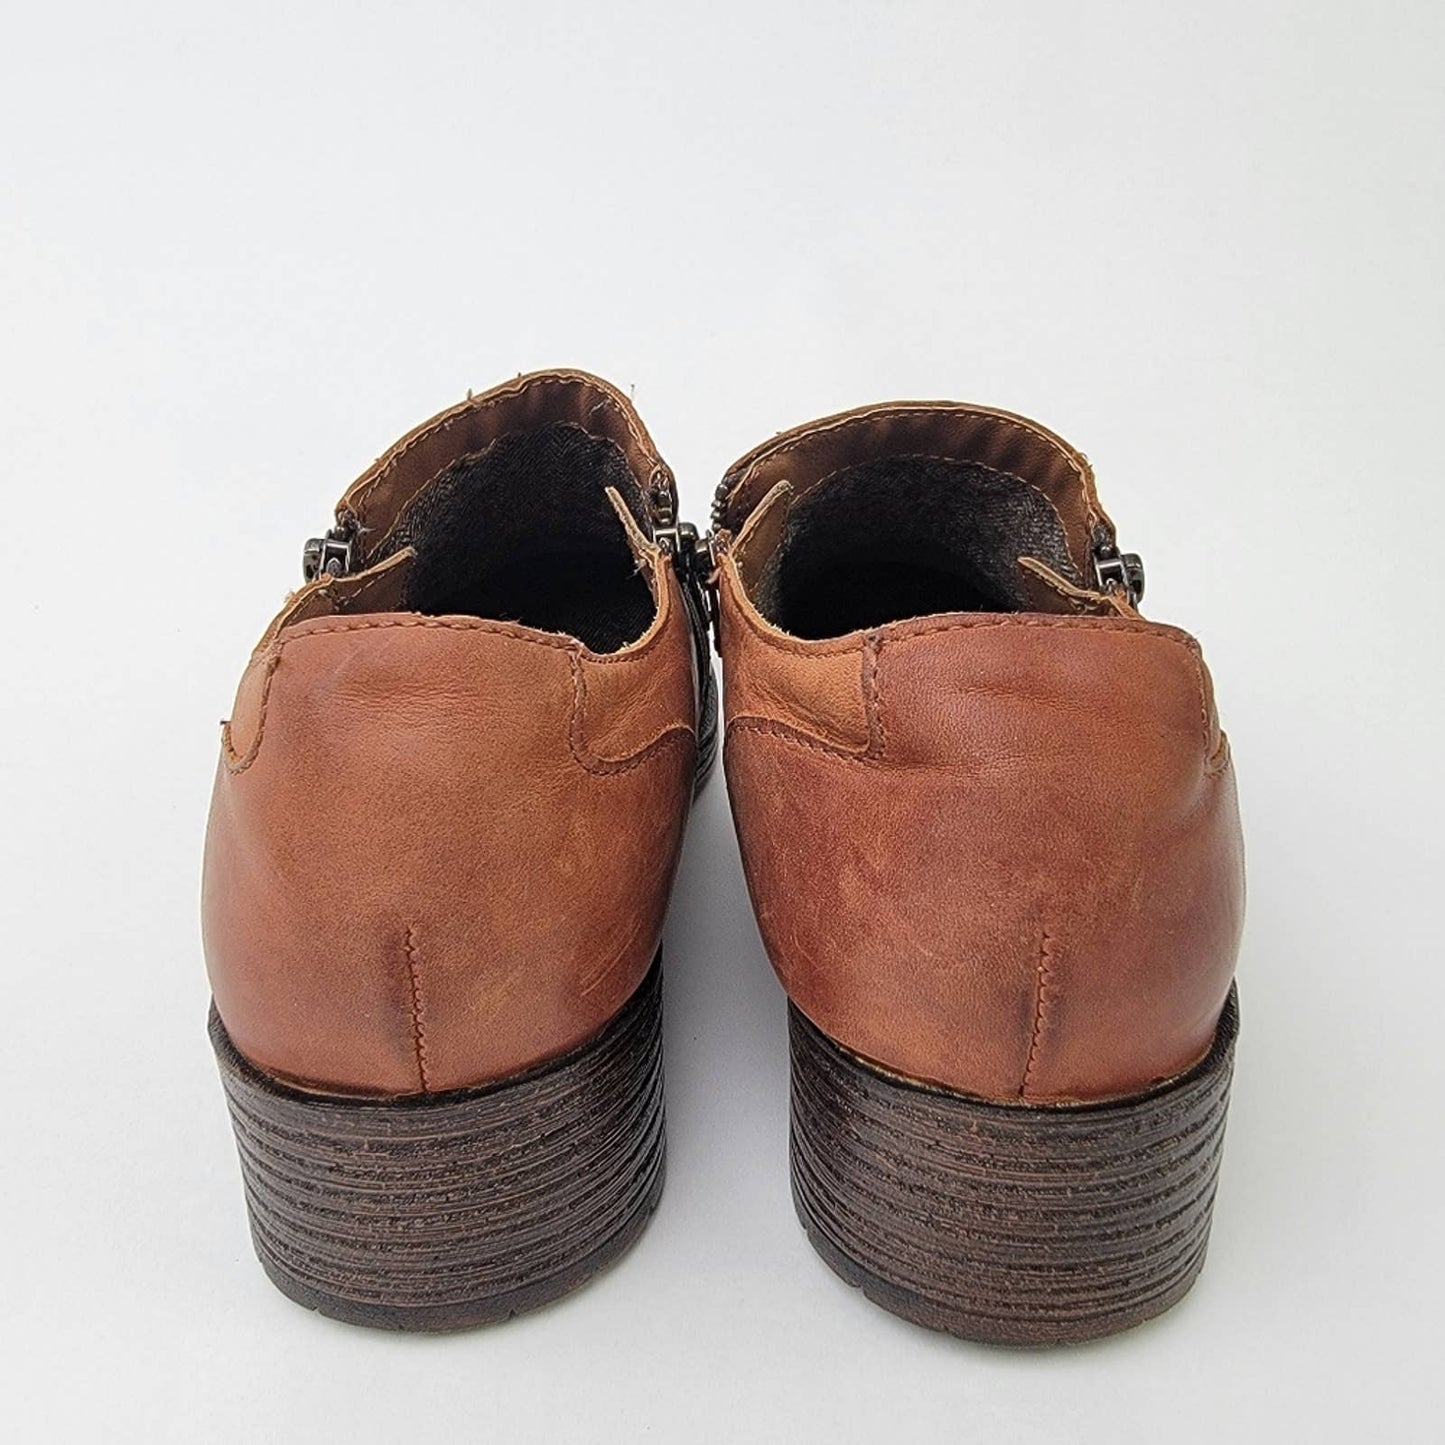 BOC Born Concept Brown Double Zipper Cap Toe Oxford Shoe - 9